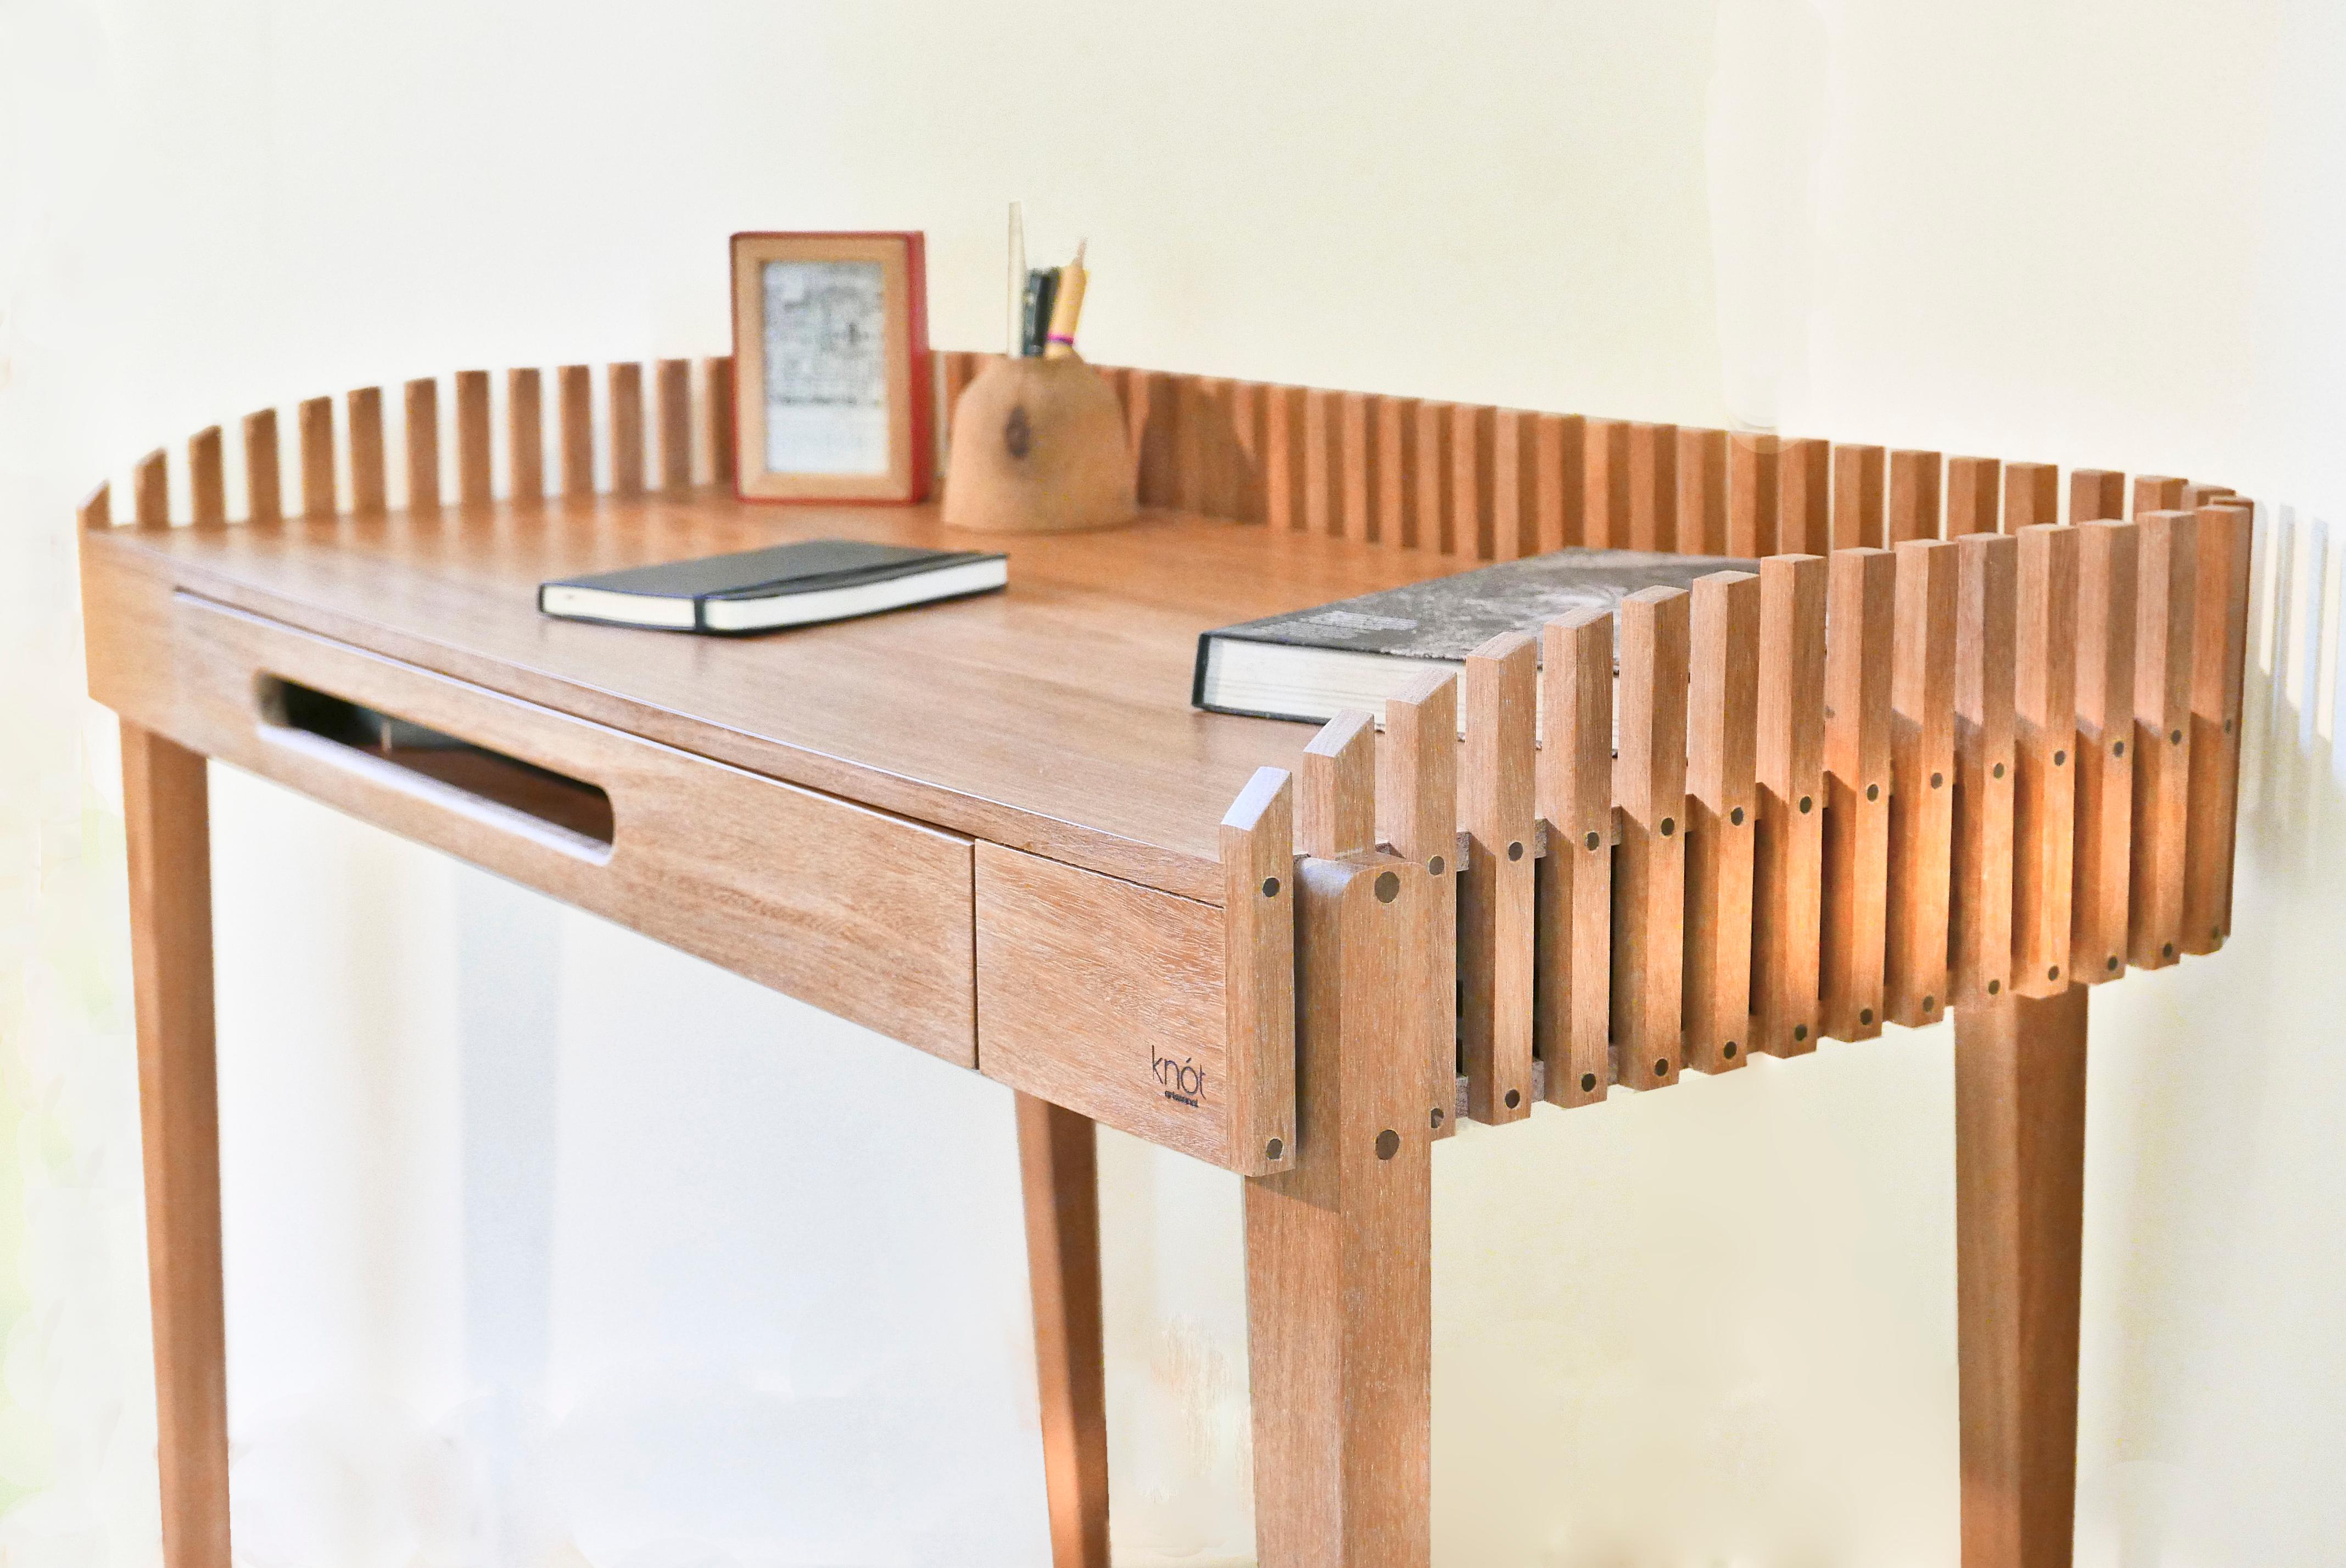 Der Schreibtisch Nido besteht aus einer großzügigen Arbeitsfläche und einer schlanken Schublade, die von zarten Lamellen umschlossen wird und auf vier schlanken Beinen ruht. Der versetzte Schubladengriff unterbricht die Symmetrie des ansonsten